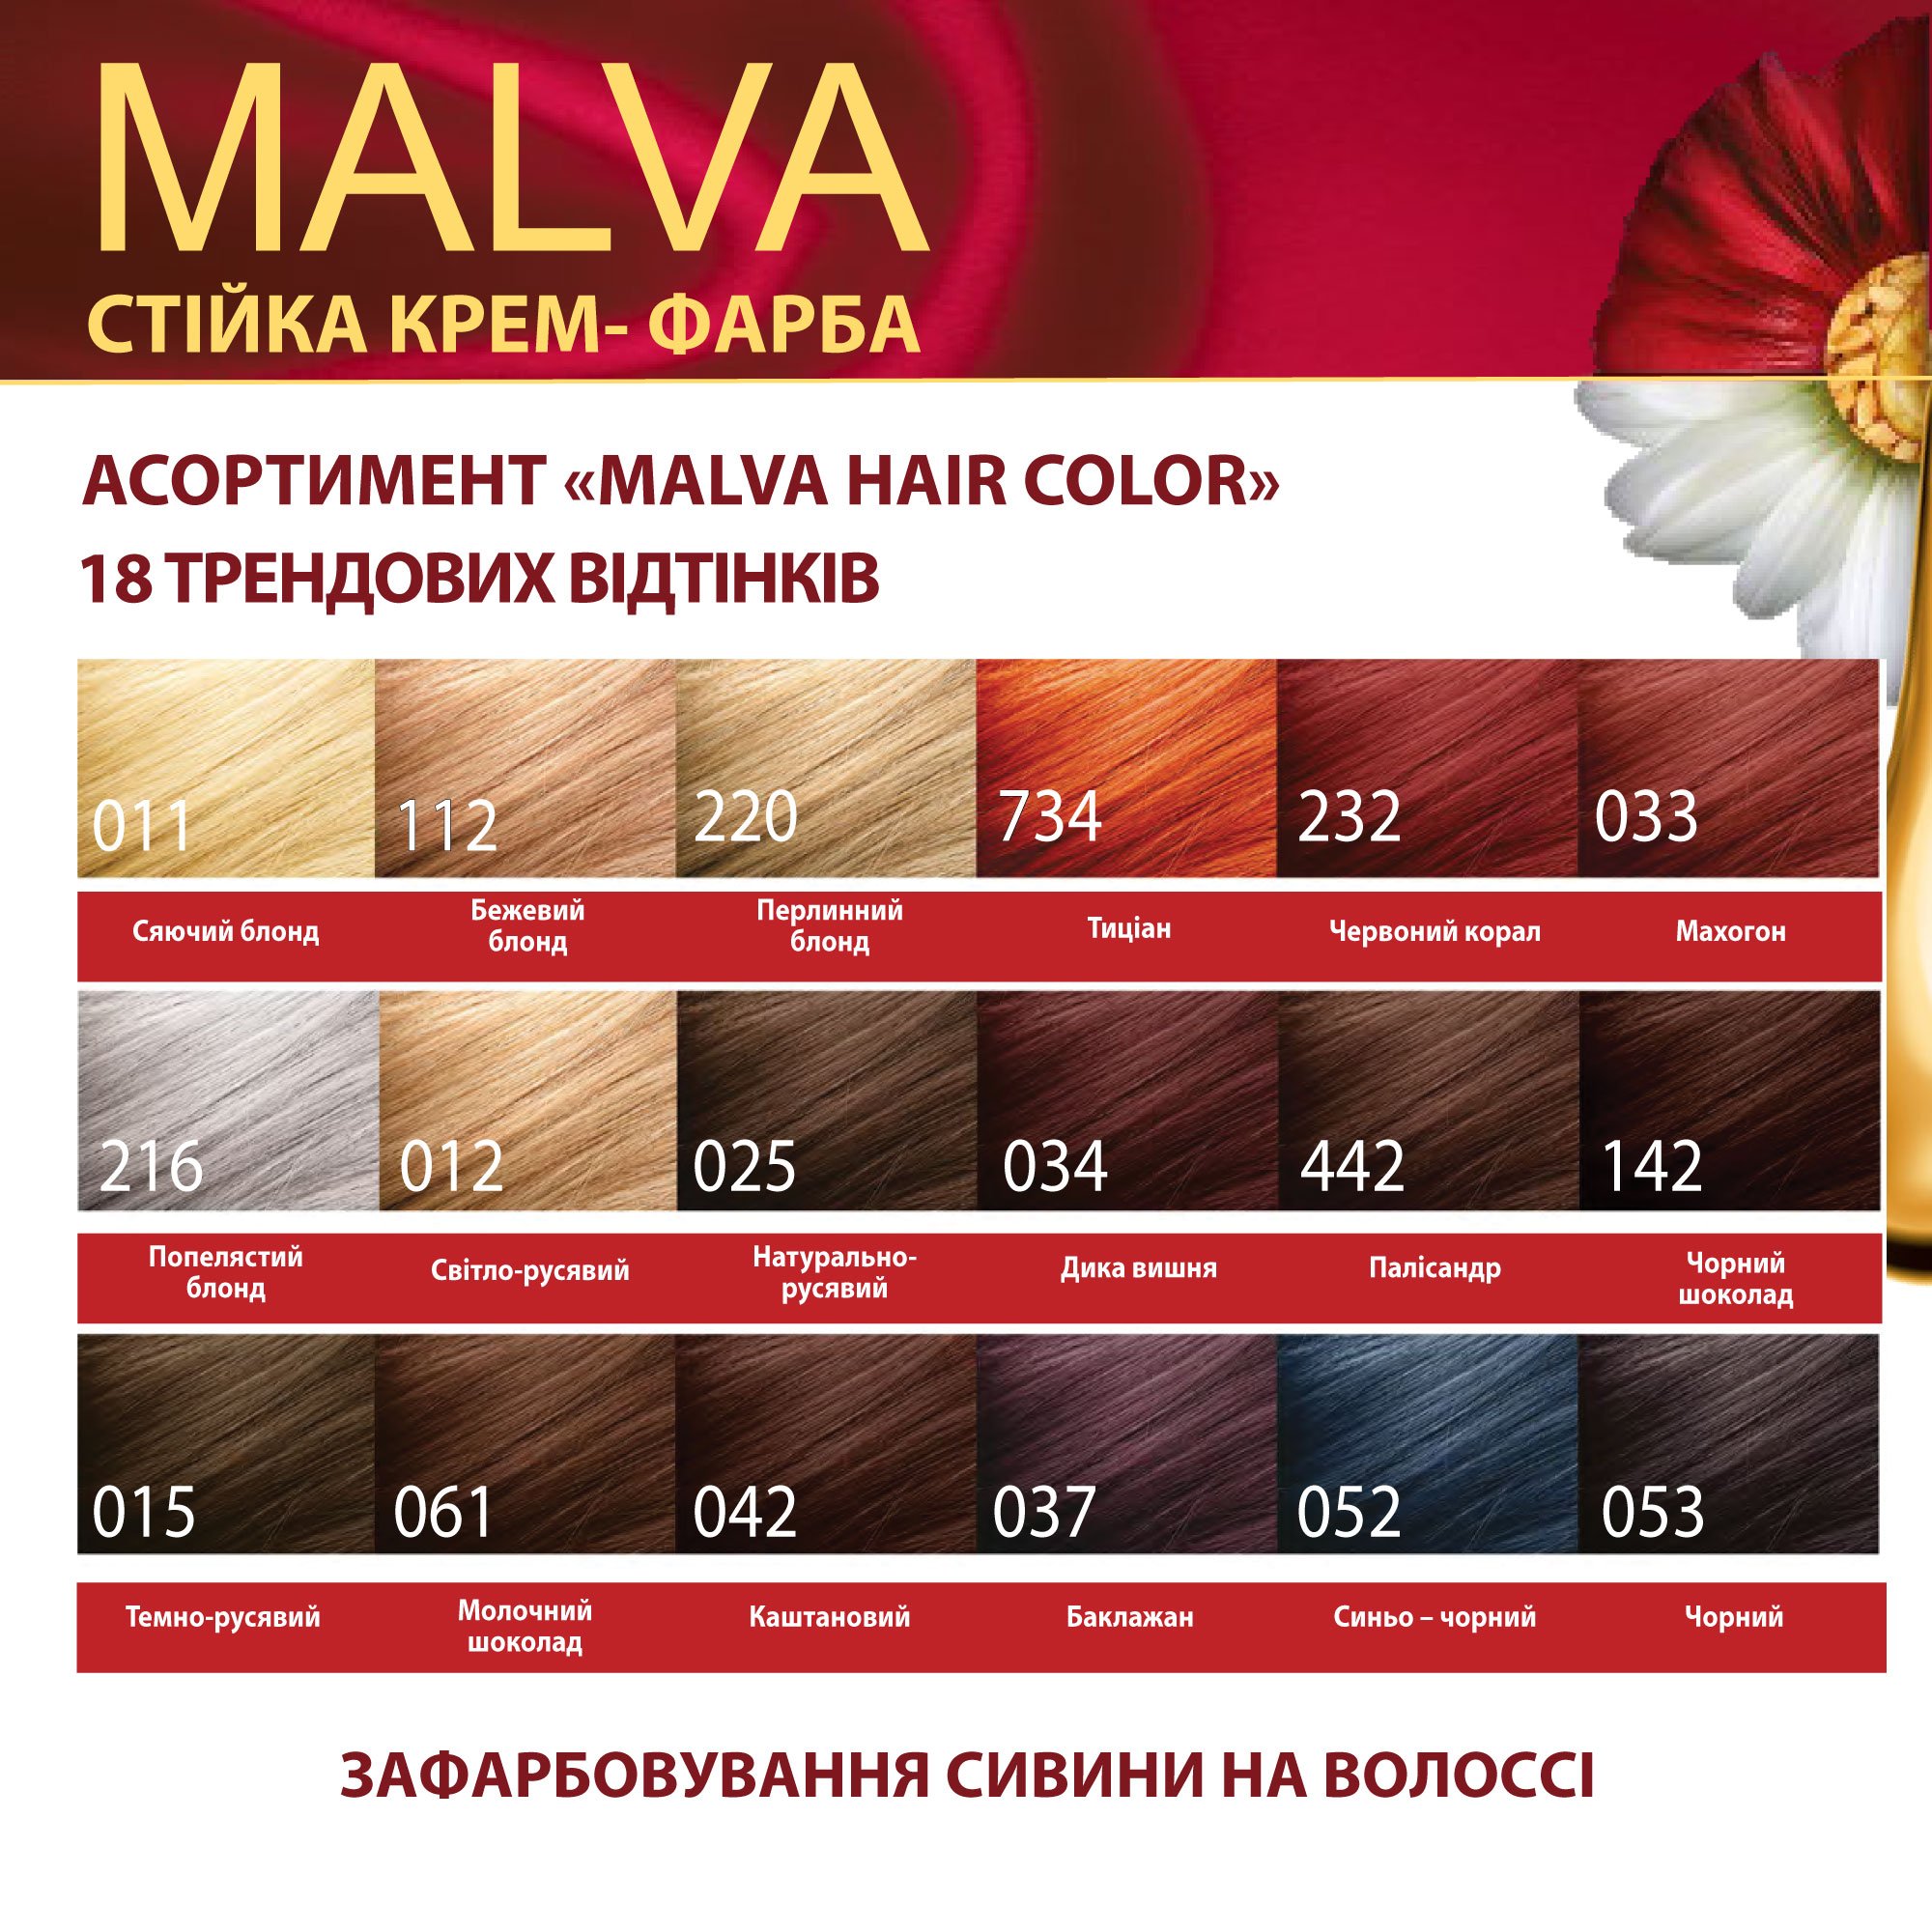 Крем-фарба для волосся Acme Color Malva, відтінок 025 (Натурально-русявий), 95 мл - фото 6